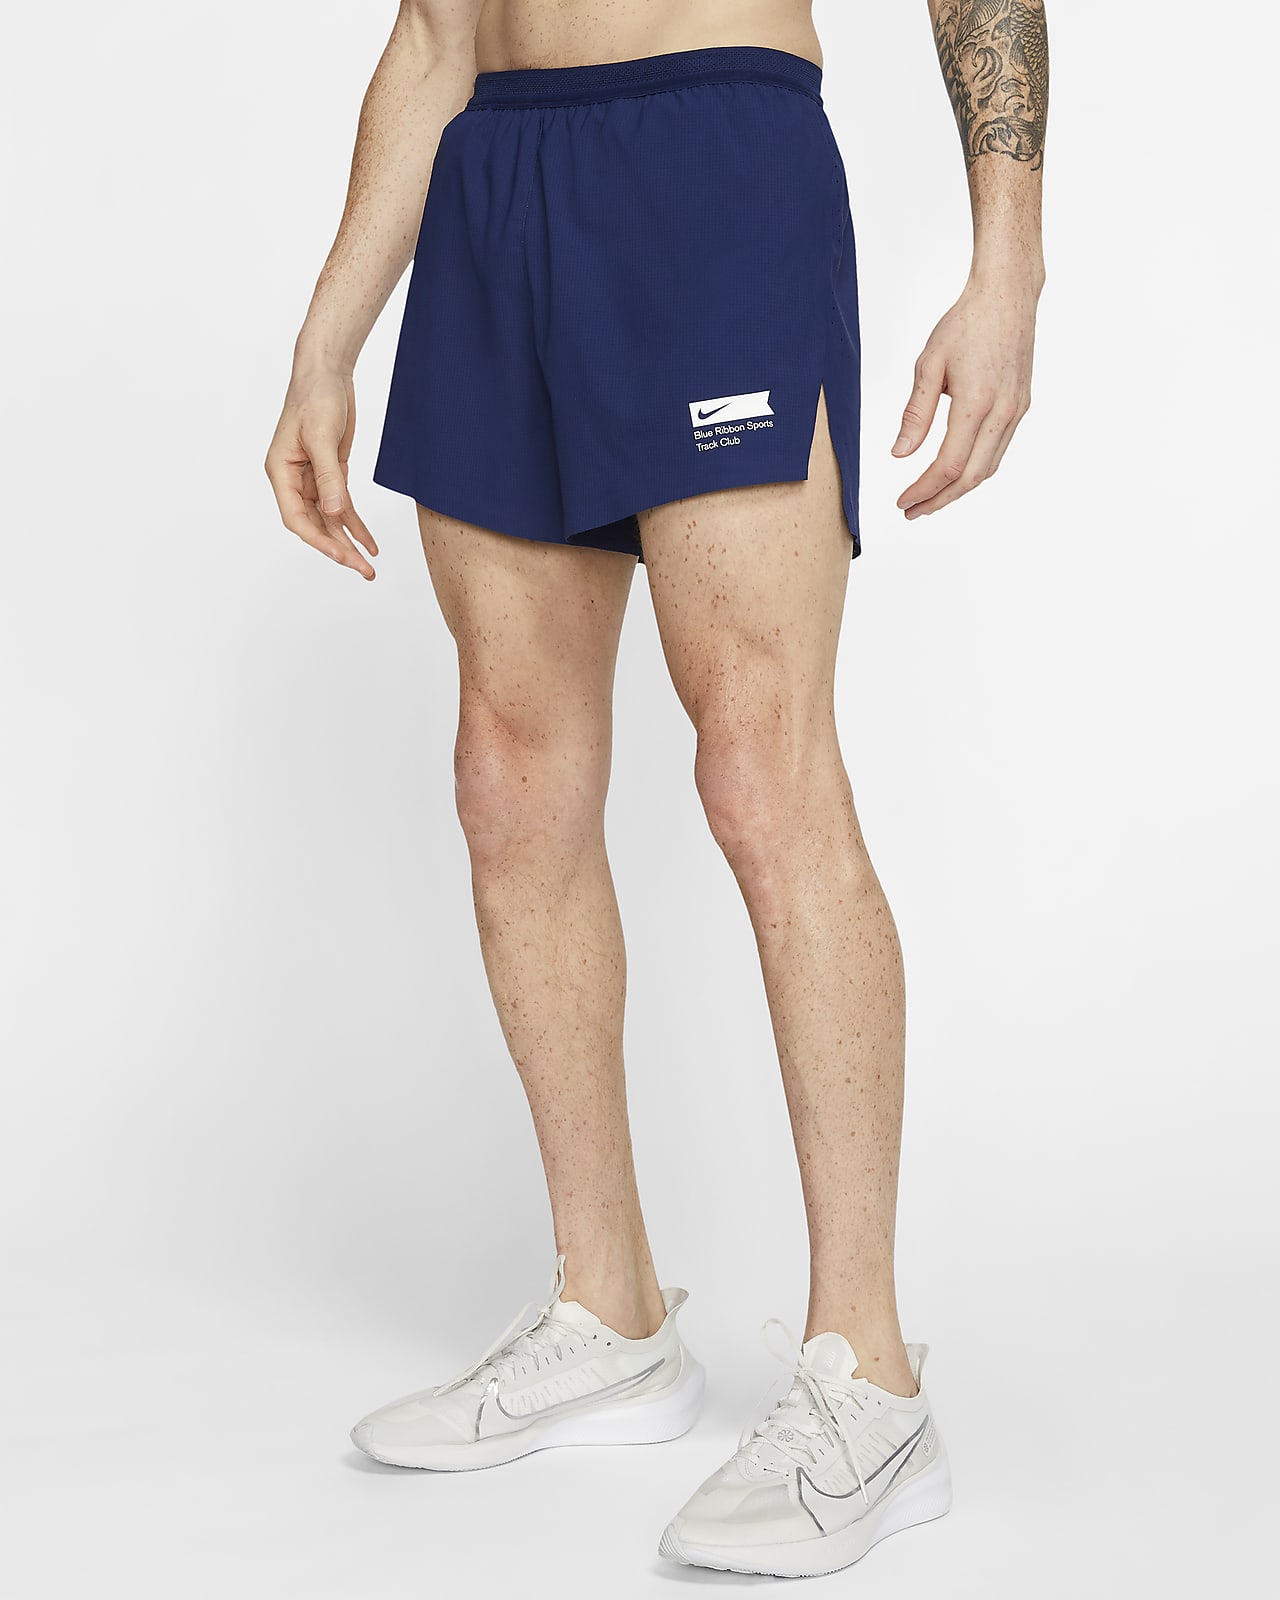 buy nike running shorts